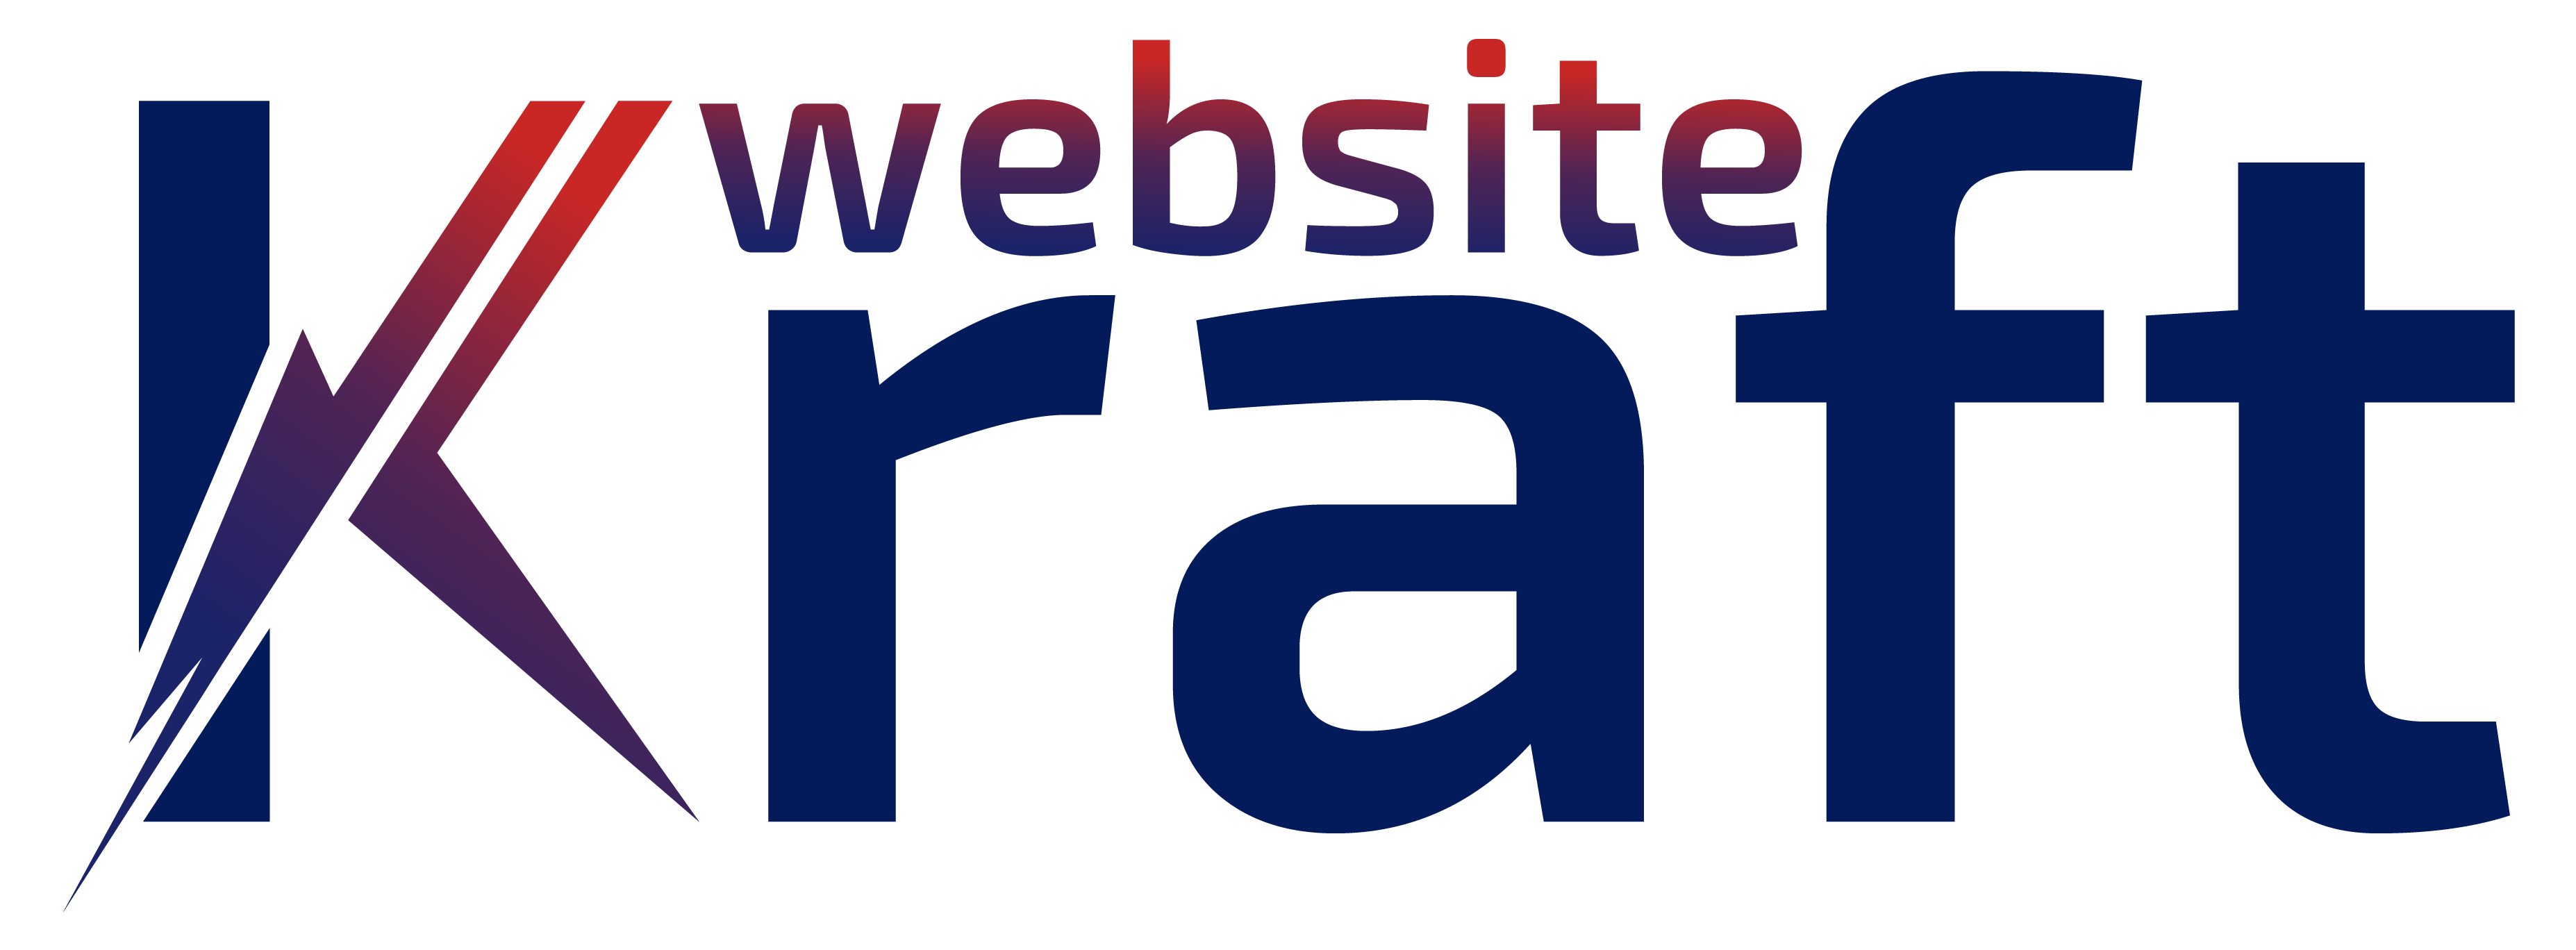 Website Kraft